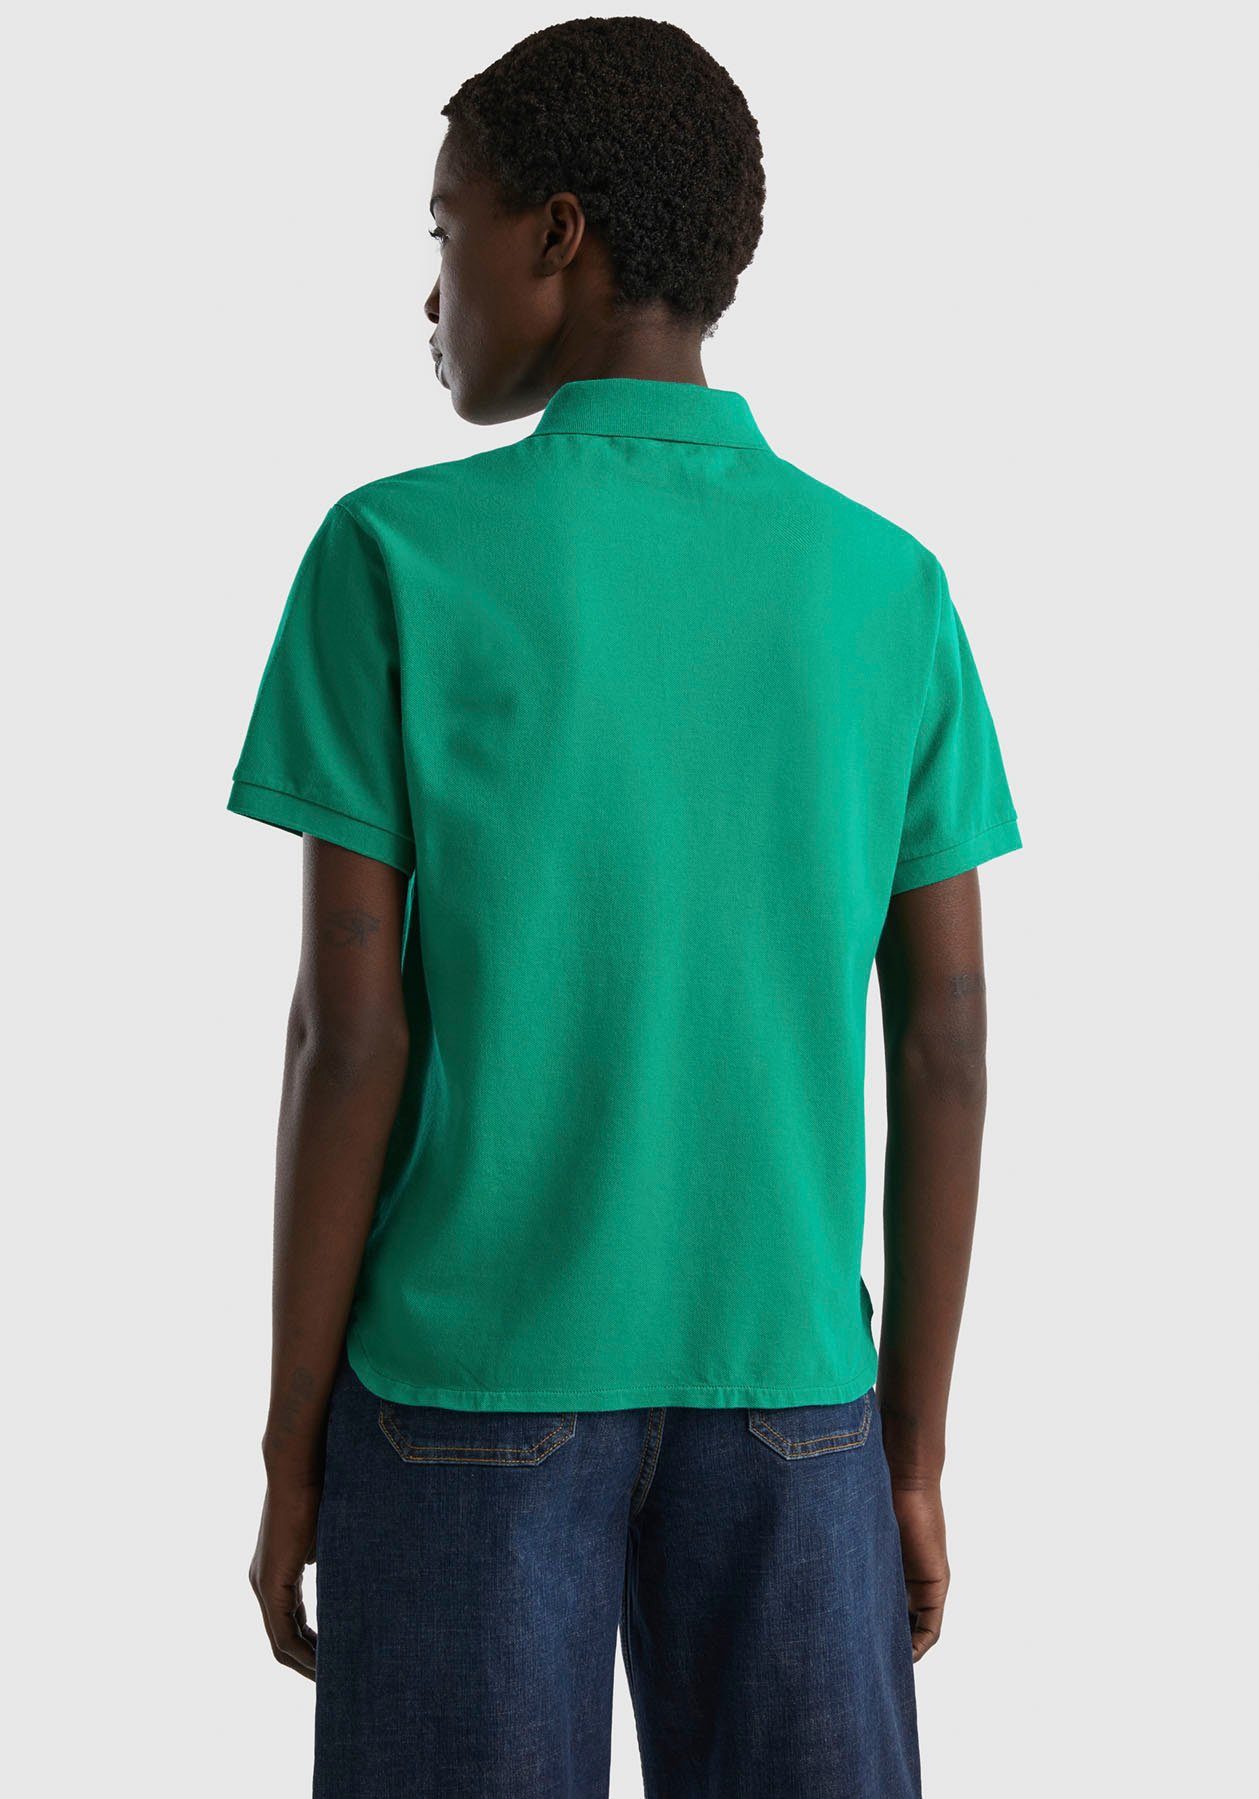 United Colors of Benetton Poloshirt mit grün perlmuttfarbenen Knöpfen